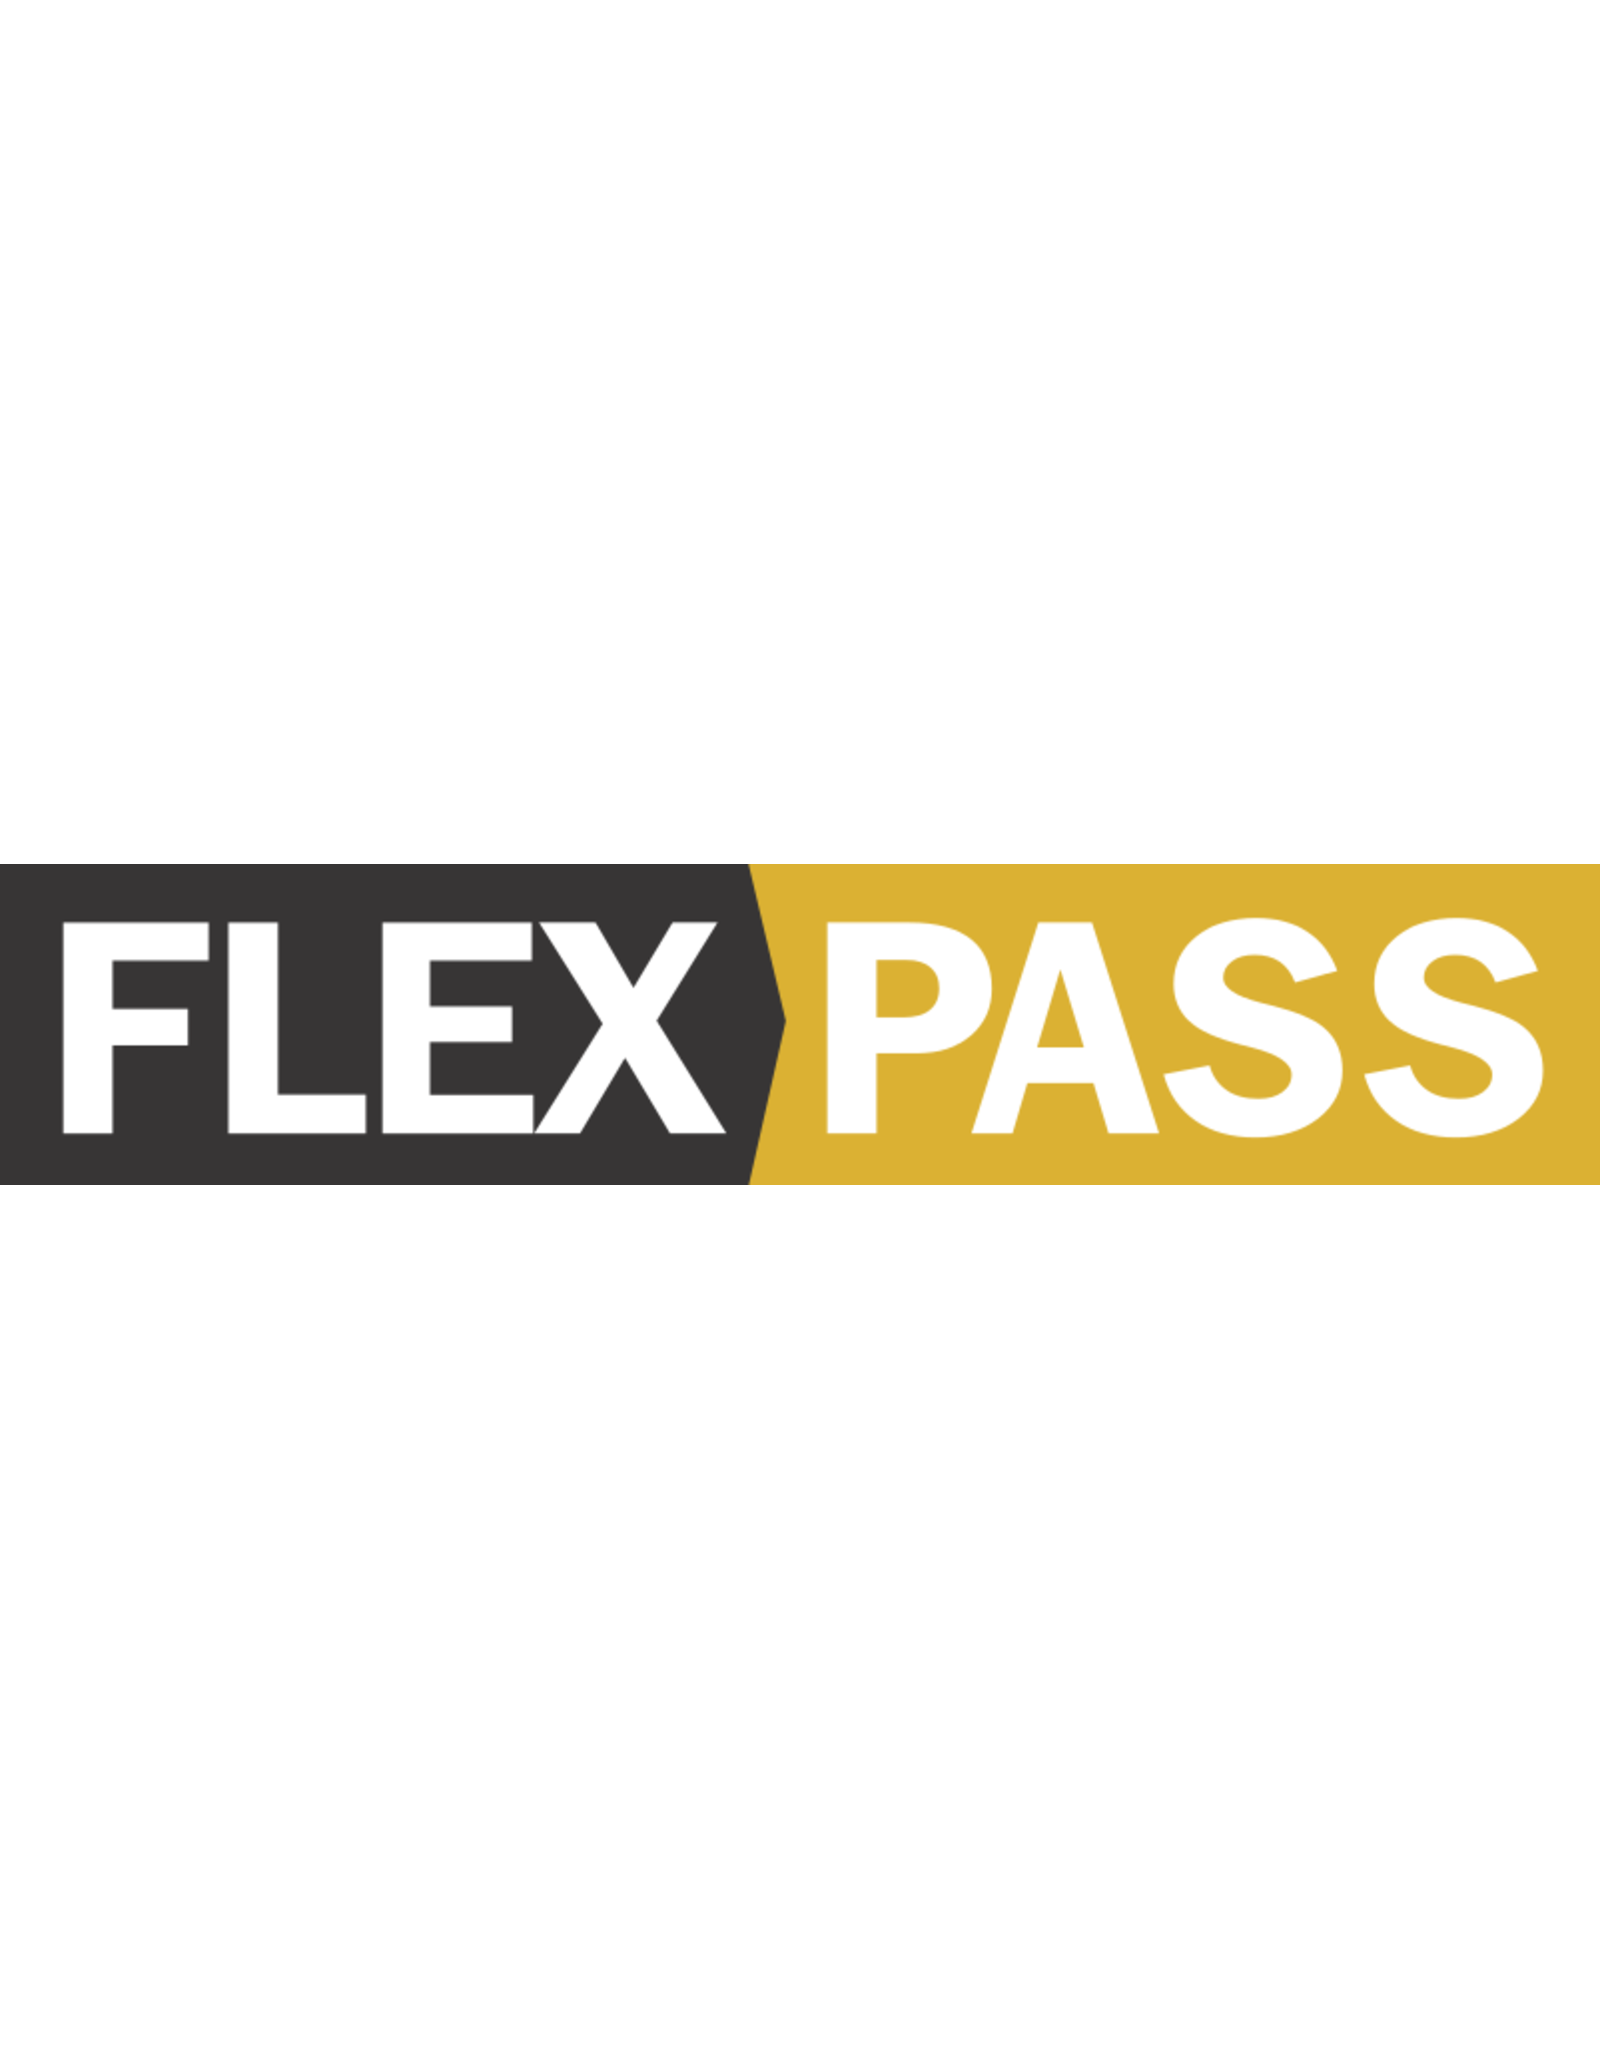 FLEX PASS - FLEX PASS